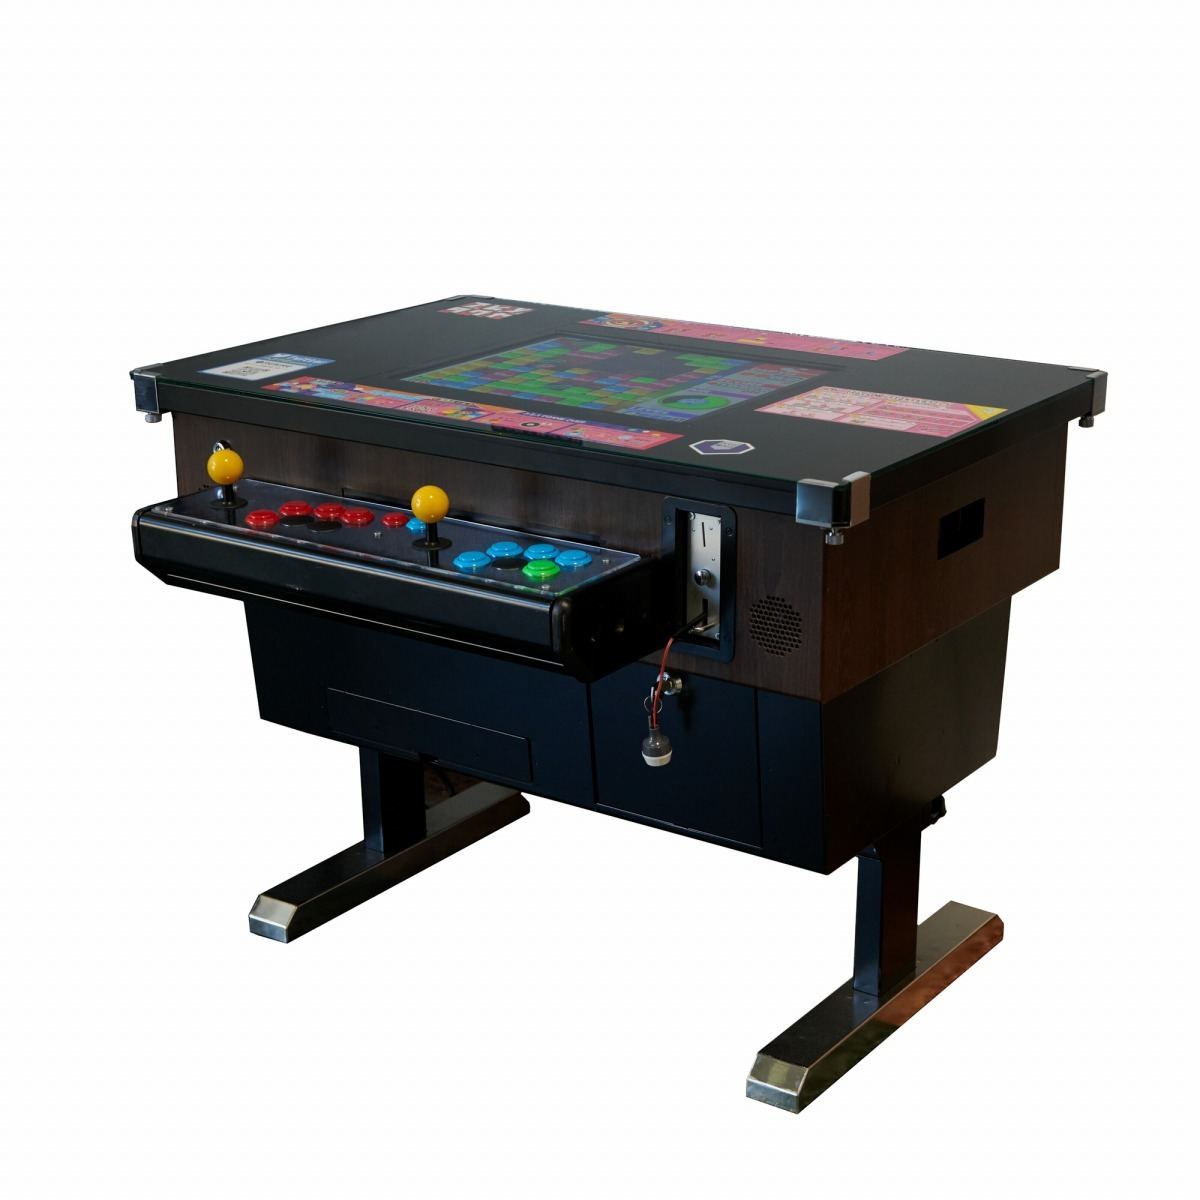 昭和懐かしのテーブル型ゲーム筐体を復刻、4月11日から50台限定で予約